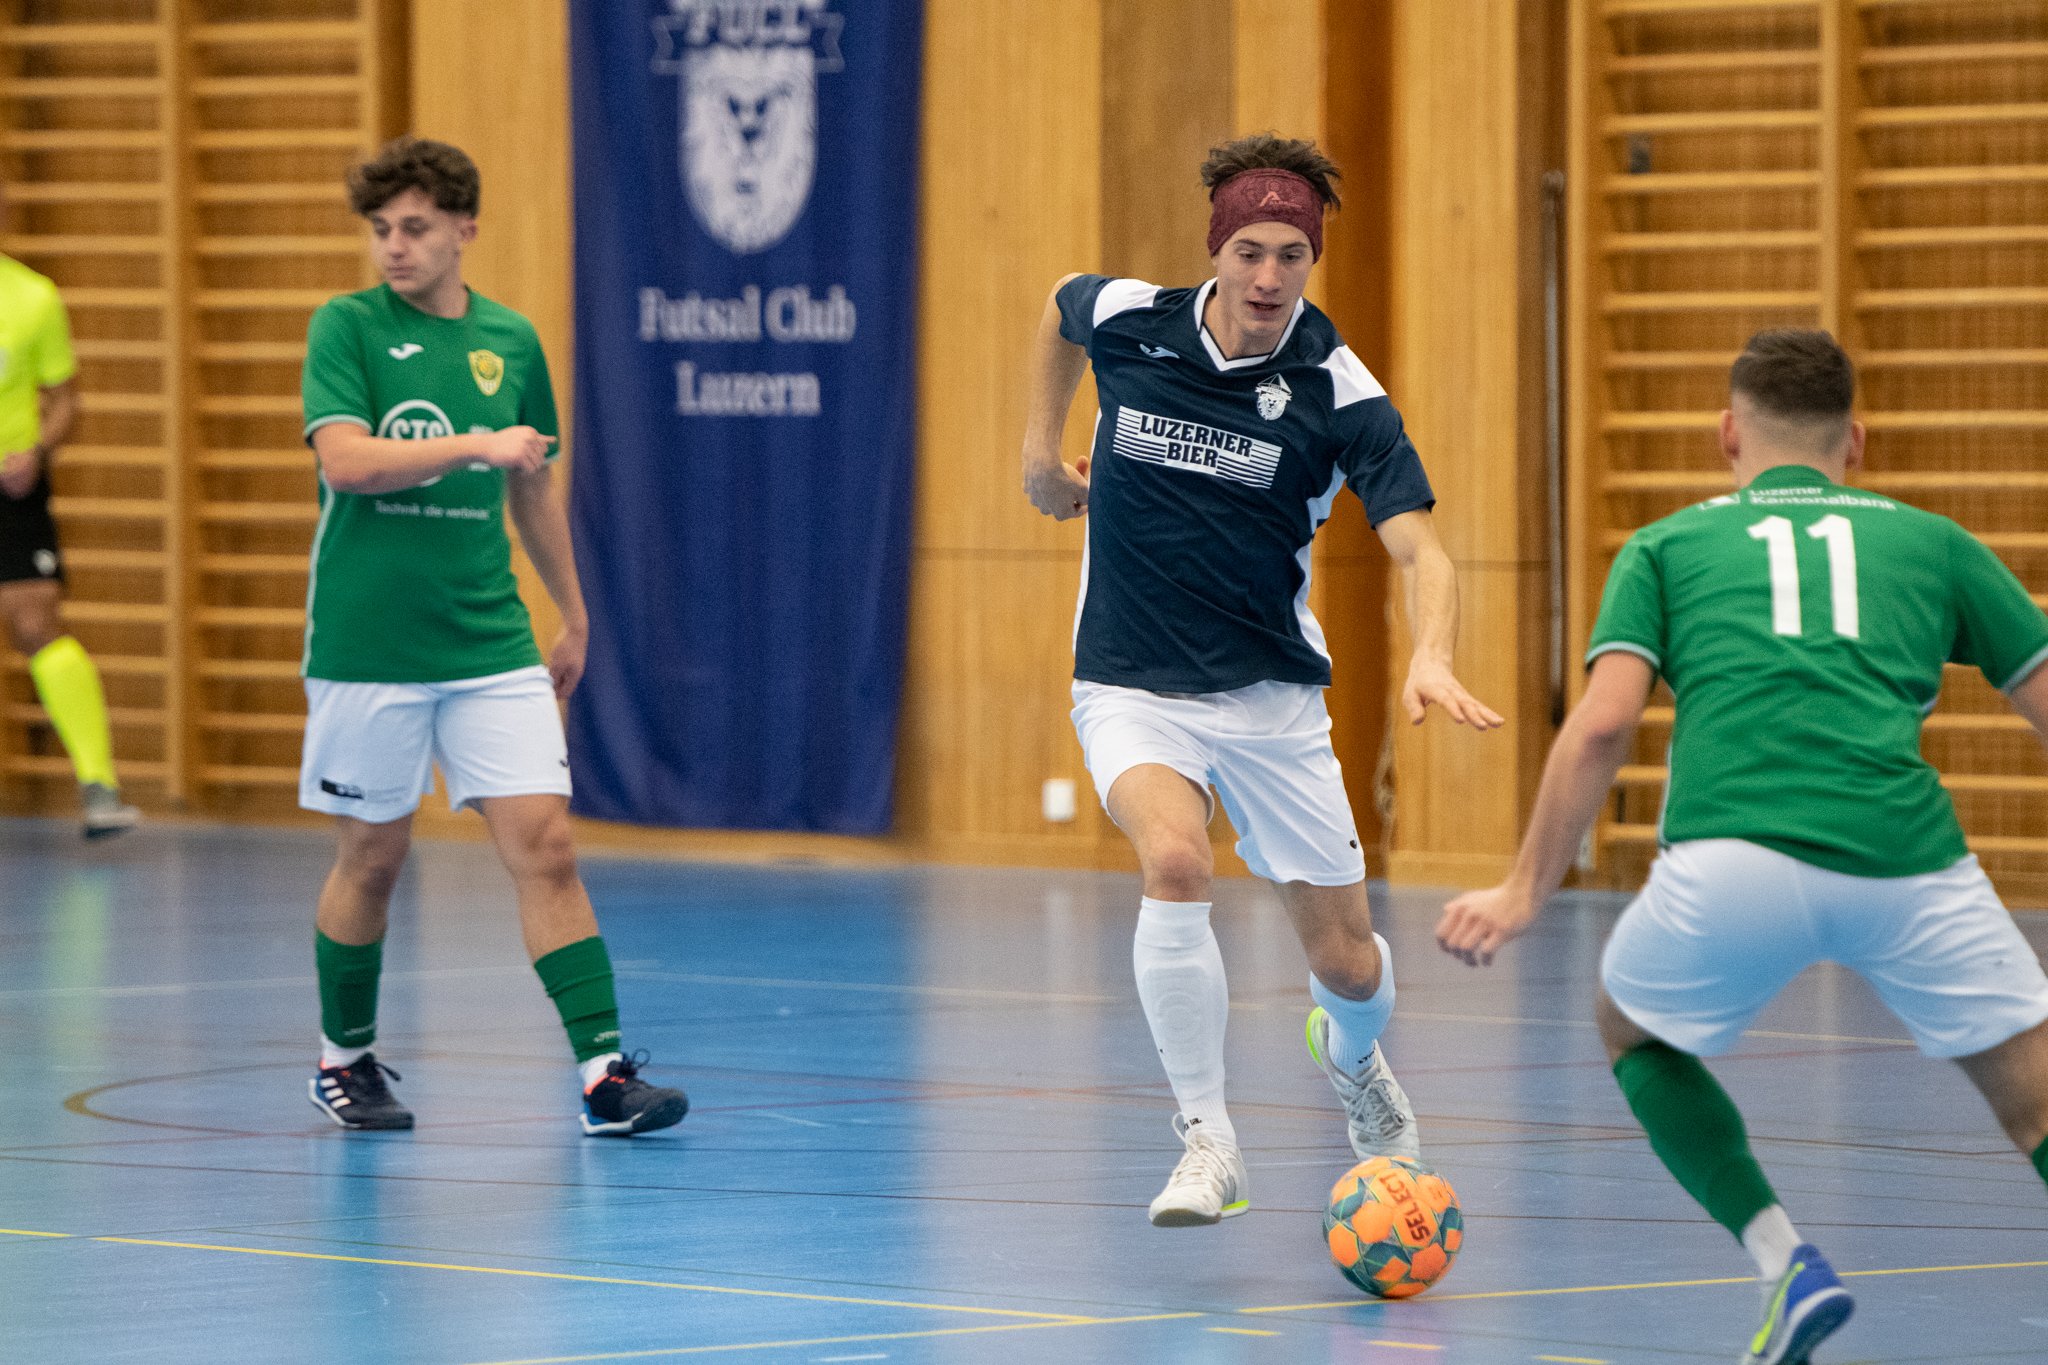 Futsal-Club-Luzern-Kriens-022.jpg